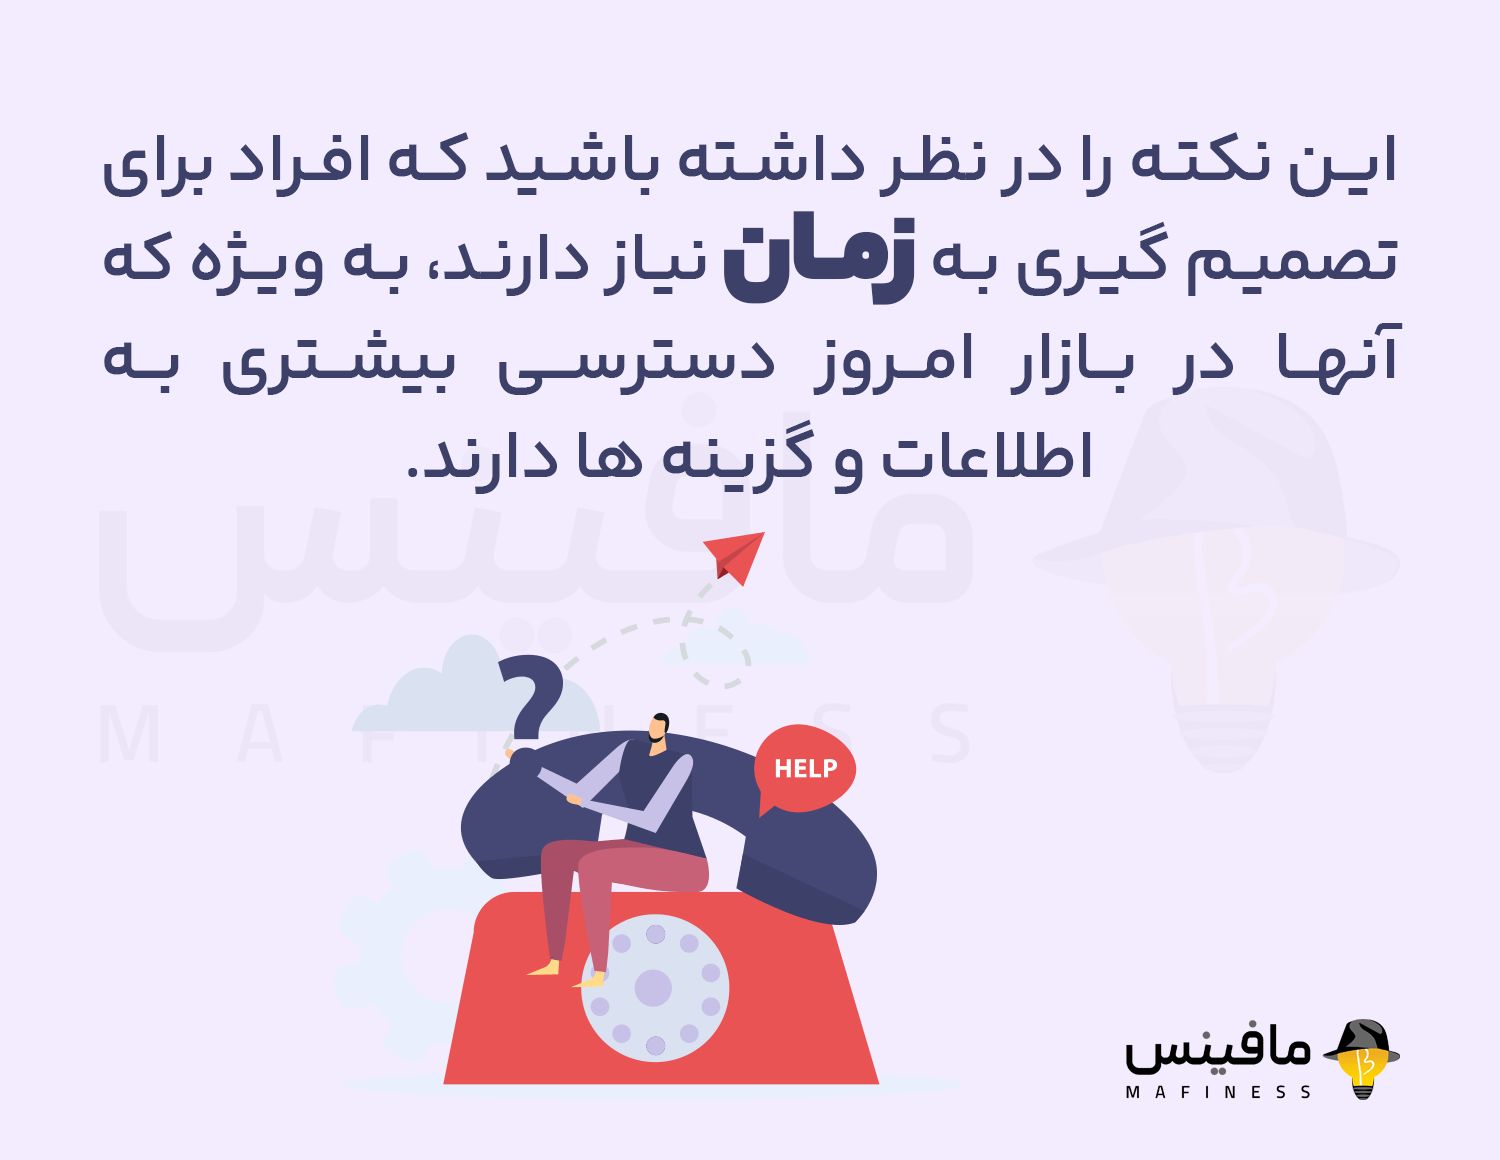 آموزش کلاس فروش تلفنی در شیراز